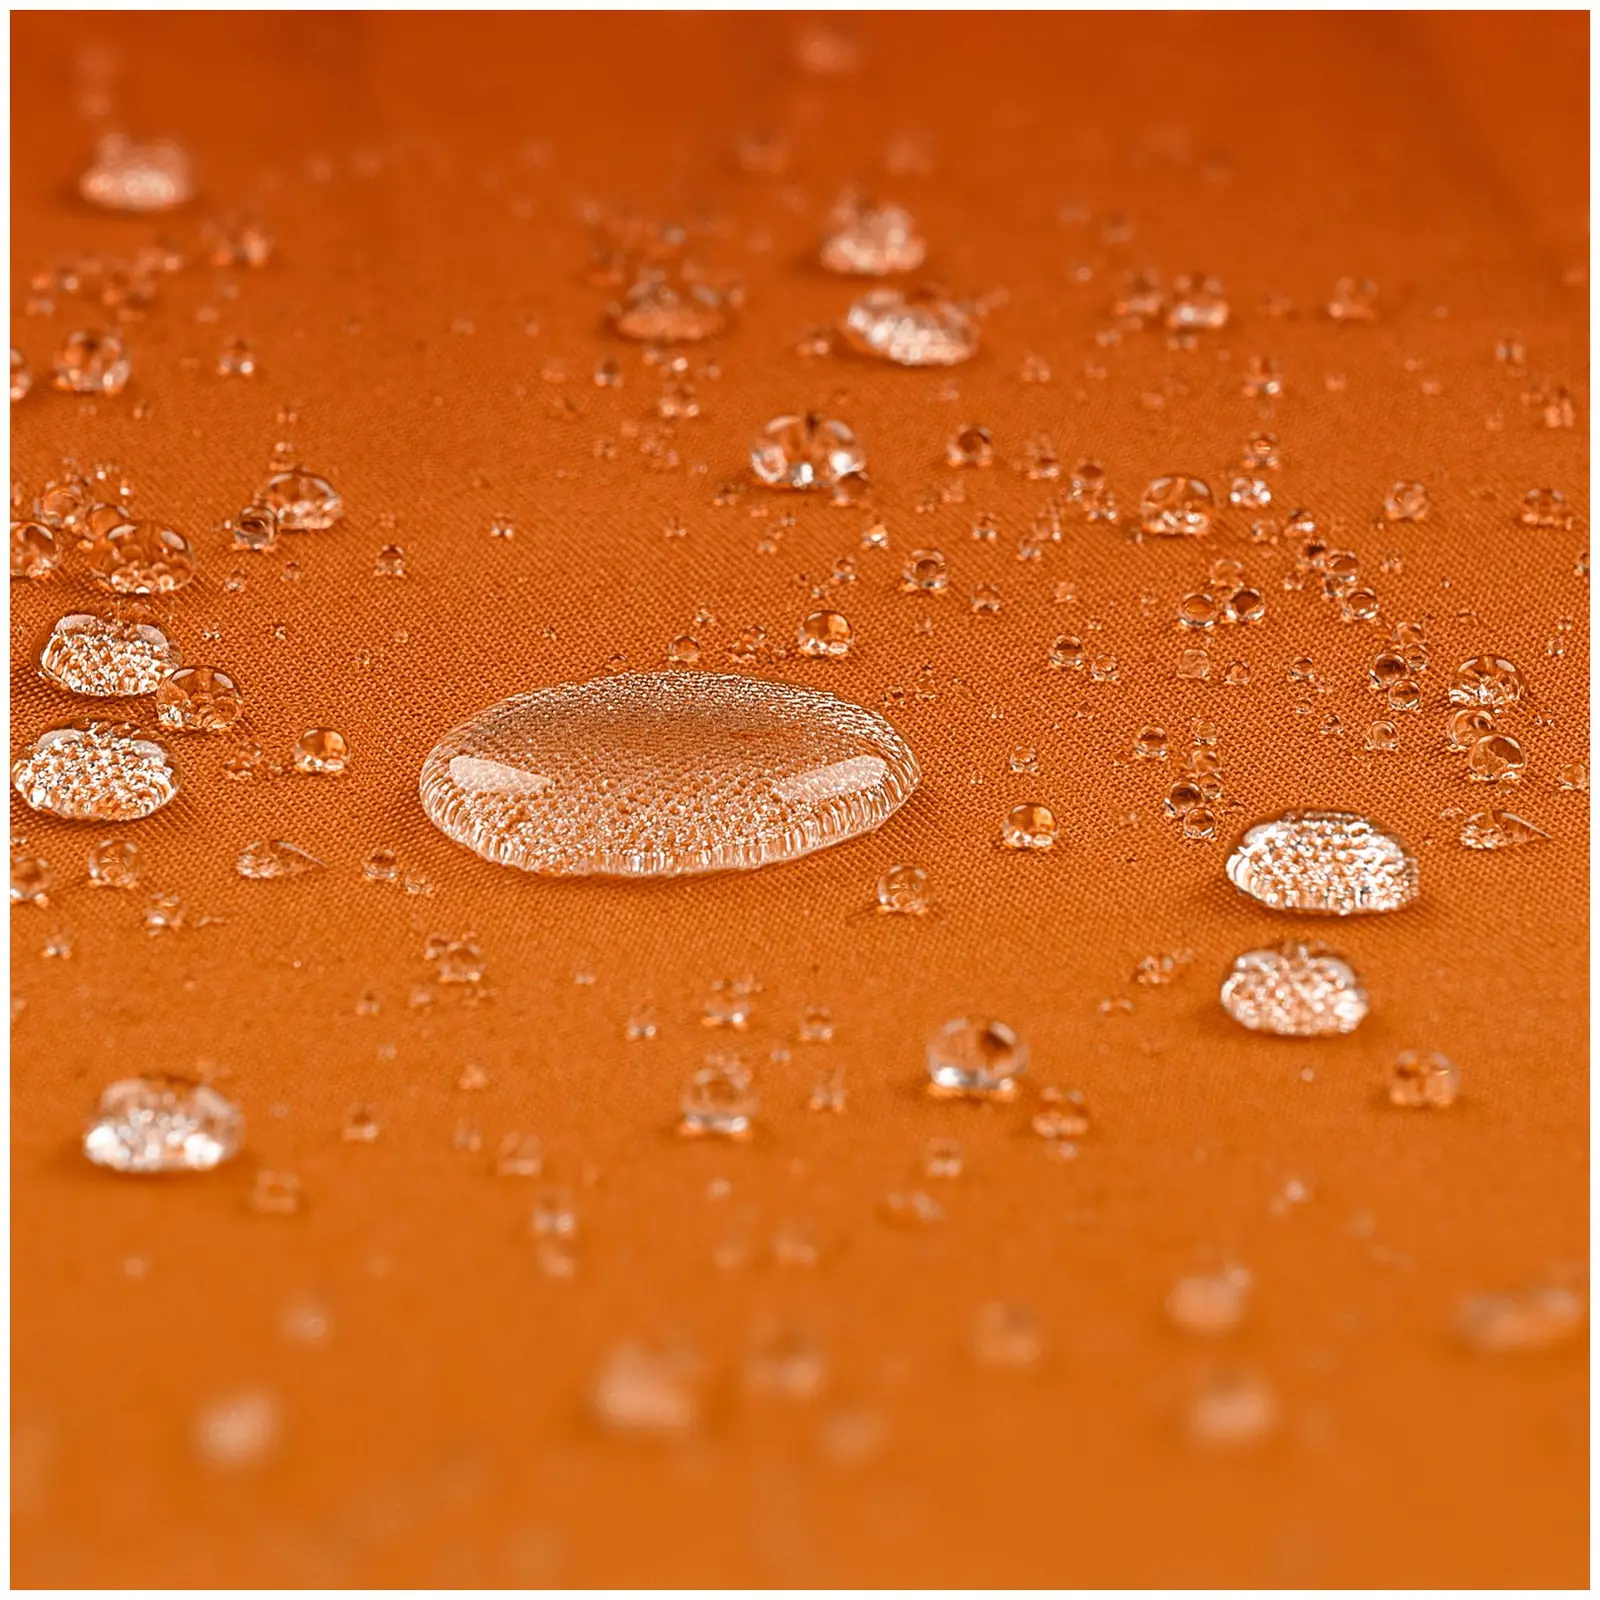 Parasol déporté - Orange - Rond - Ø 300 cm - Inclinable et pivotant